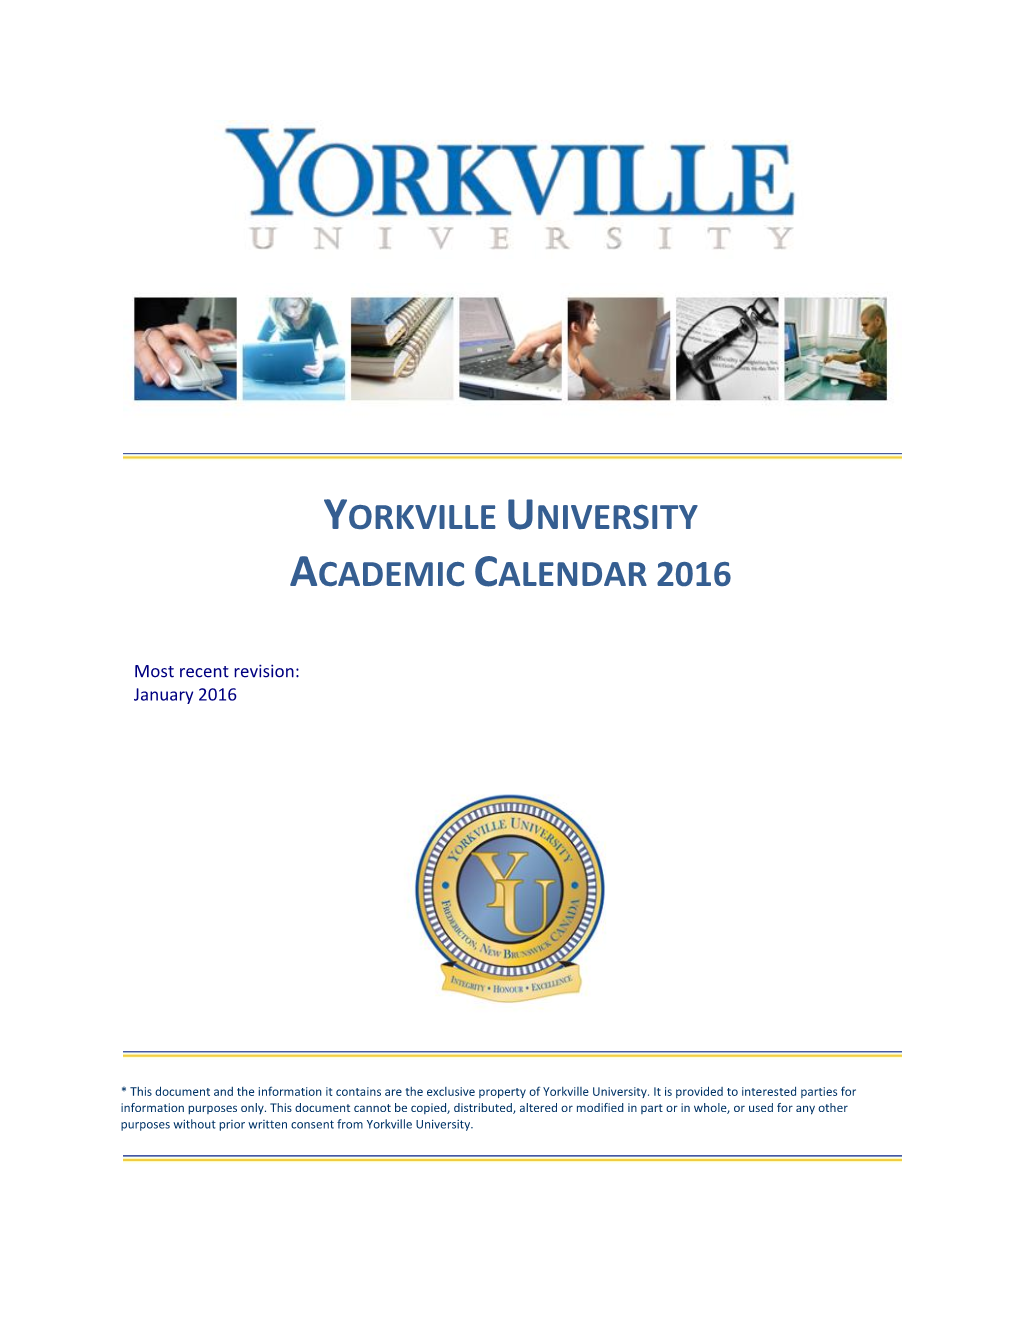 Yorkville University Academic Calendar 2016